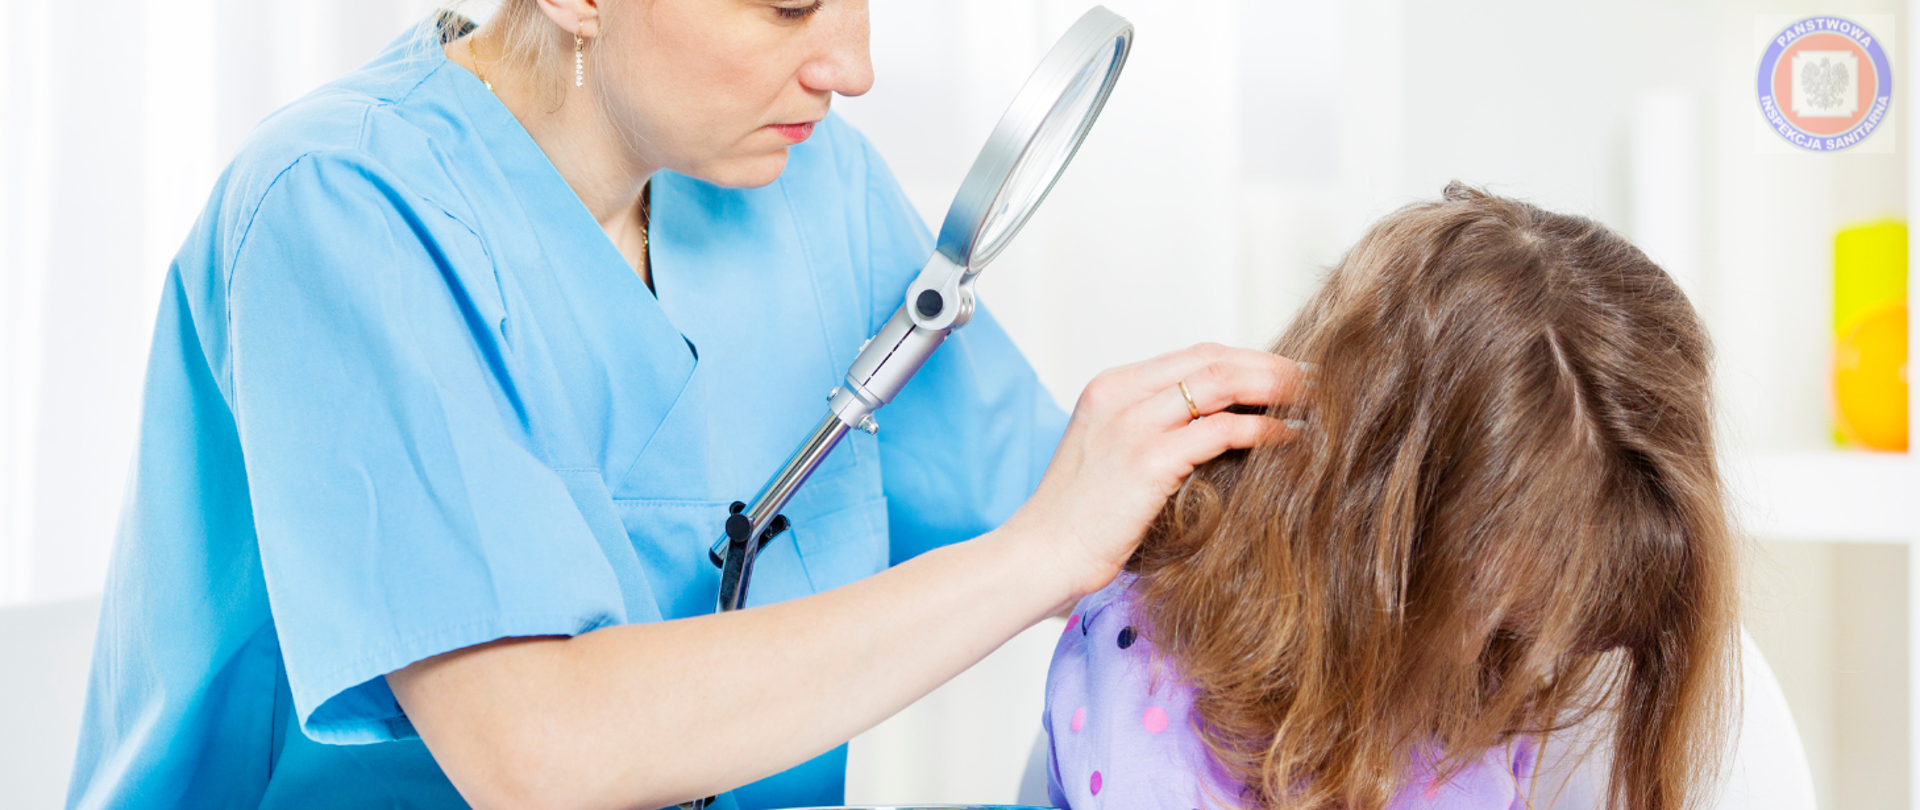 Na zdjęciu widać lekarkę lub higienistkę, która przy użyciu lupy powiększającej sprawdza włosy młodej dziewczynki